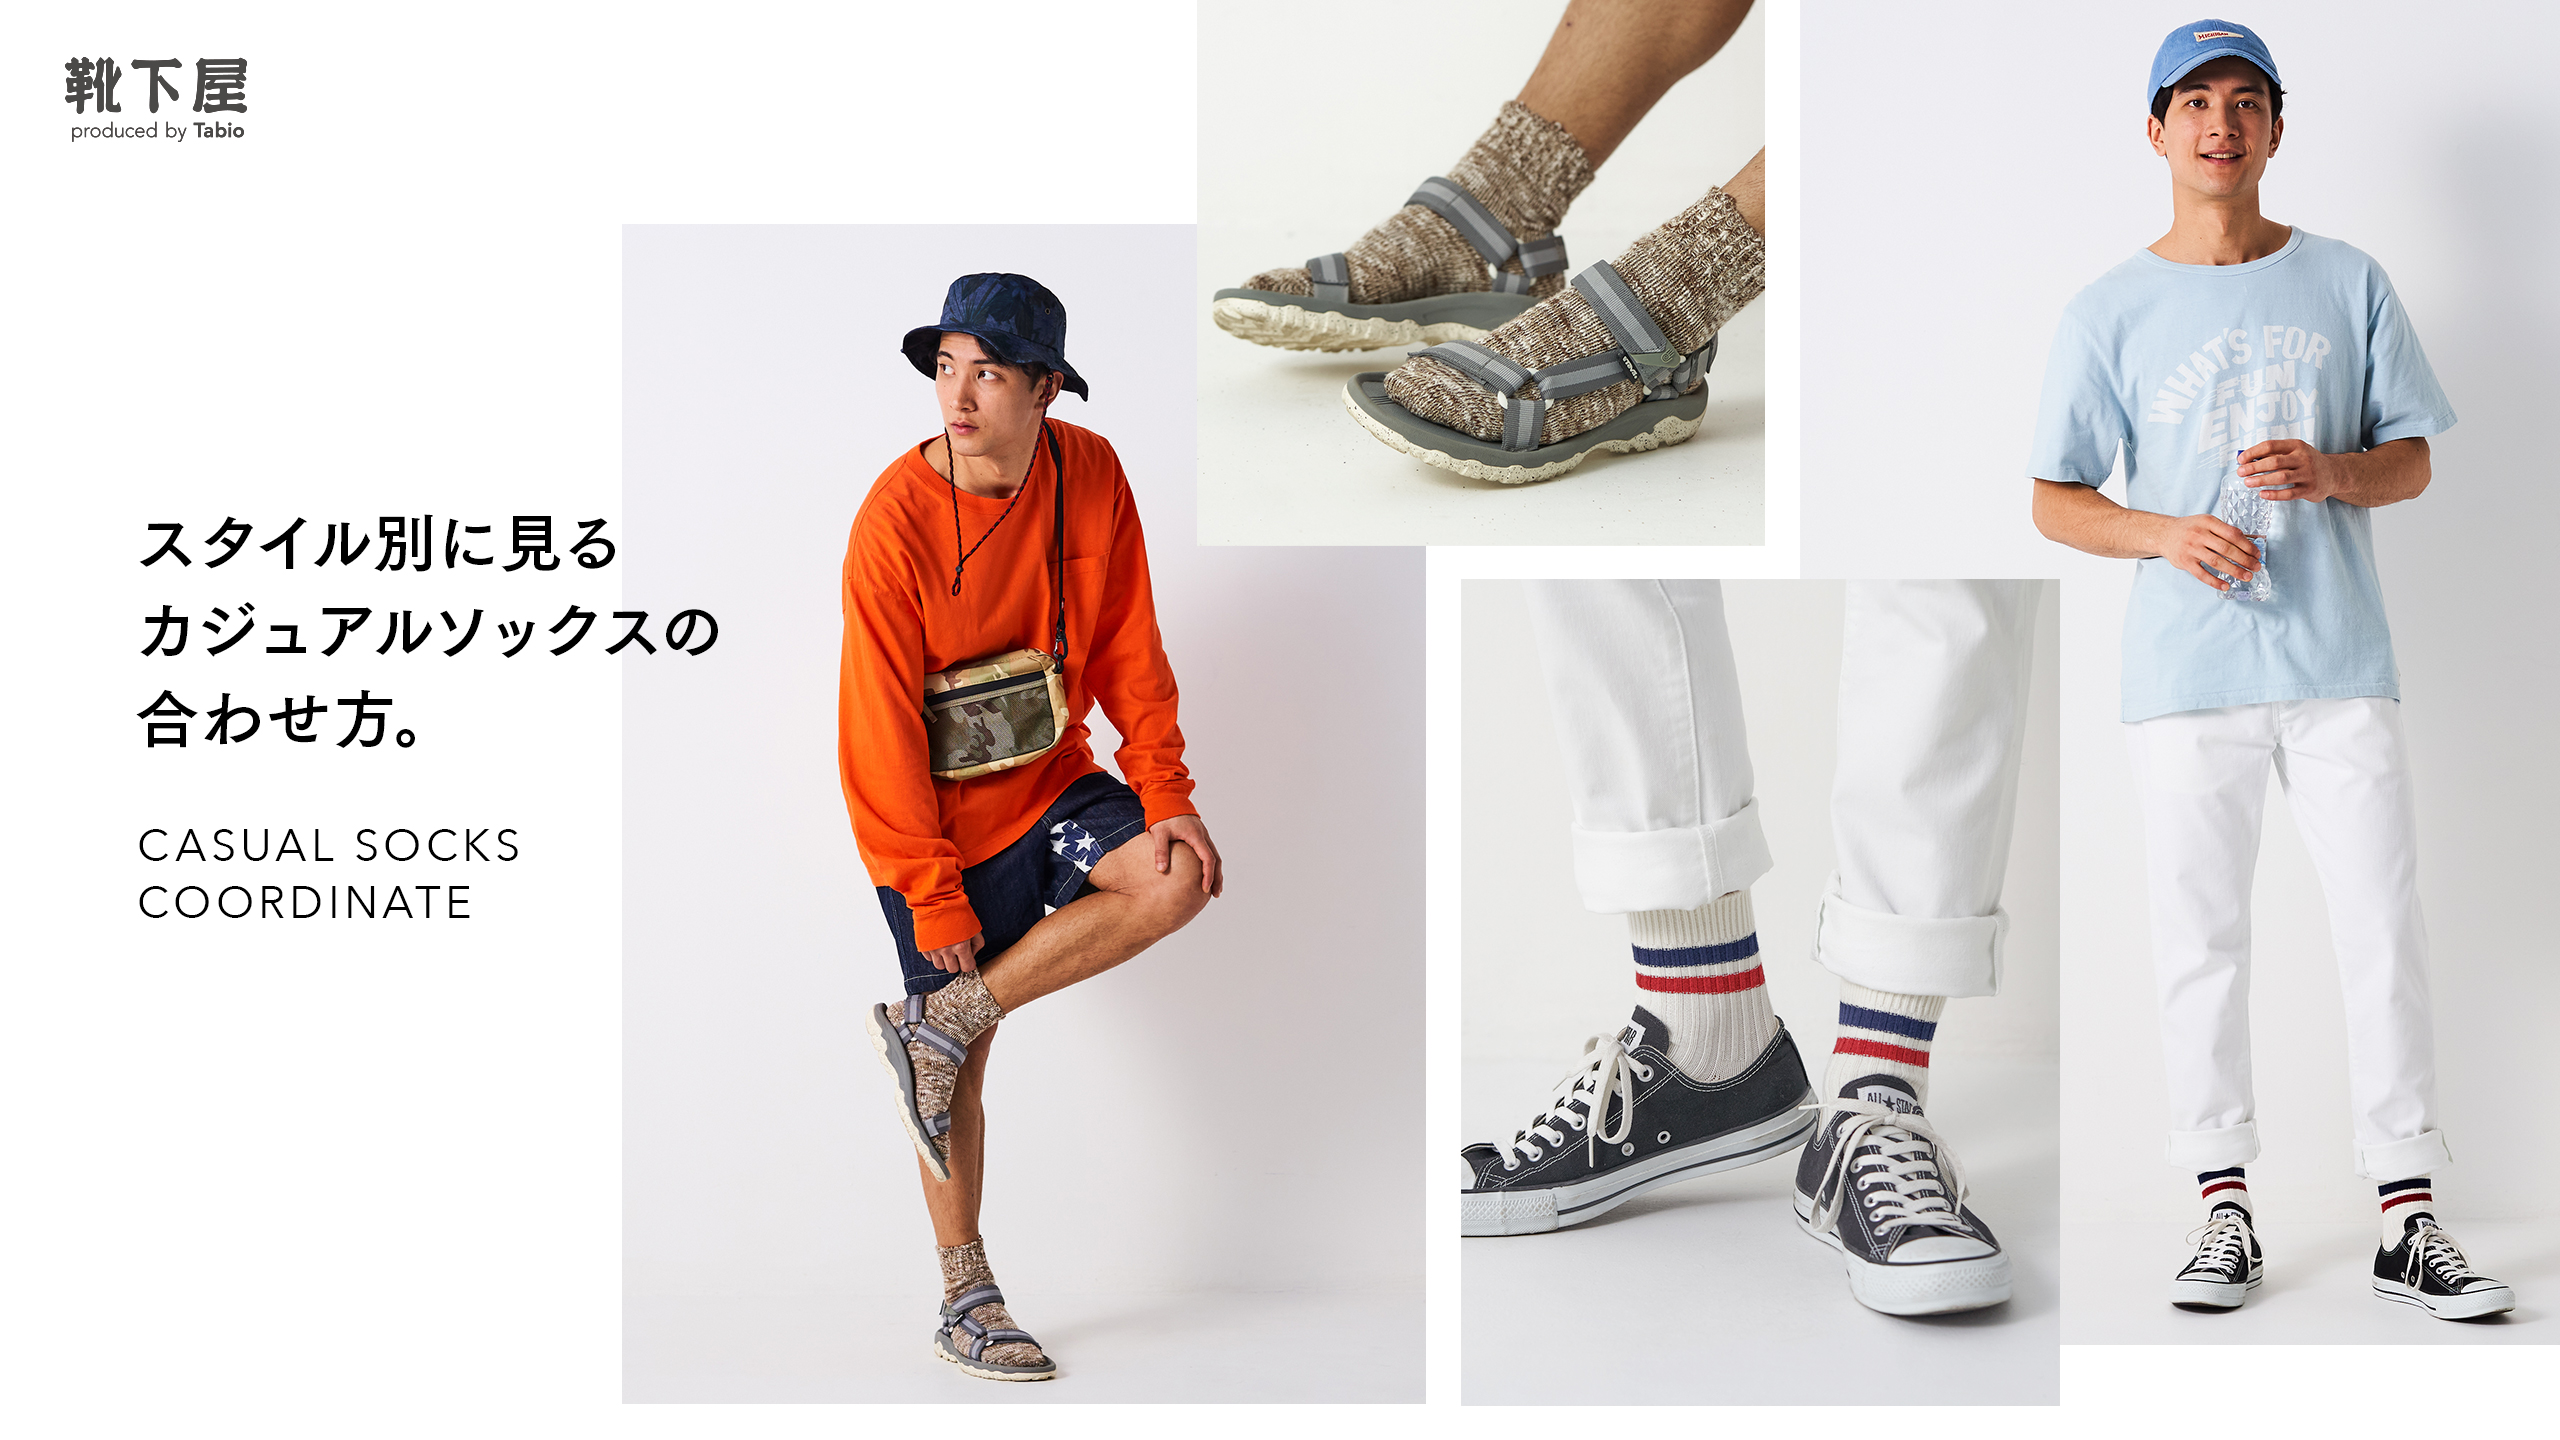 スタイル別に見るカジュアルソックスの合わせ方 靴下屋公式通販 Tabio オンラインストア 送料無料